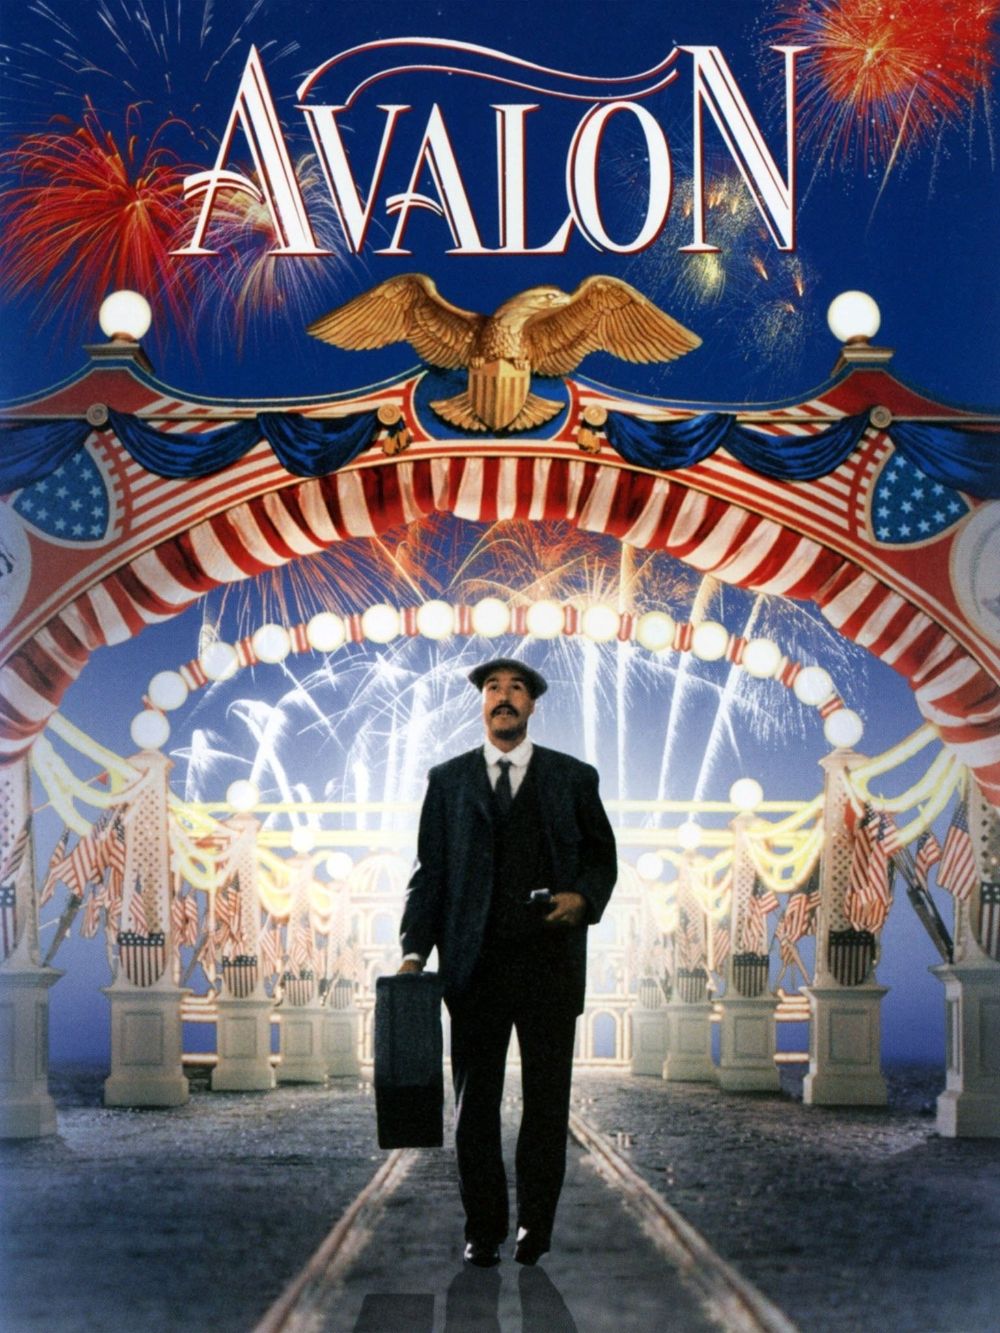 Avalon poster